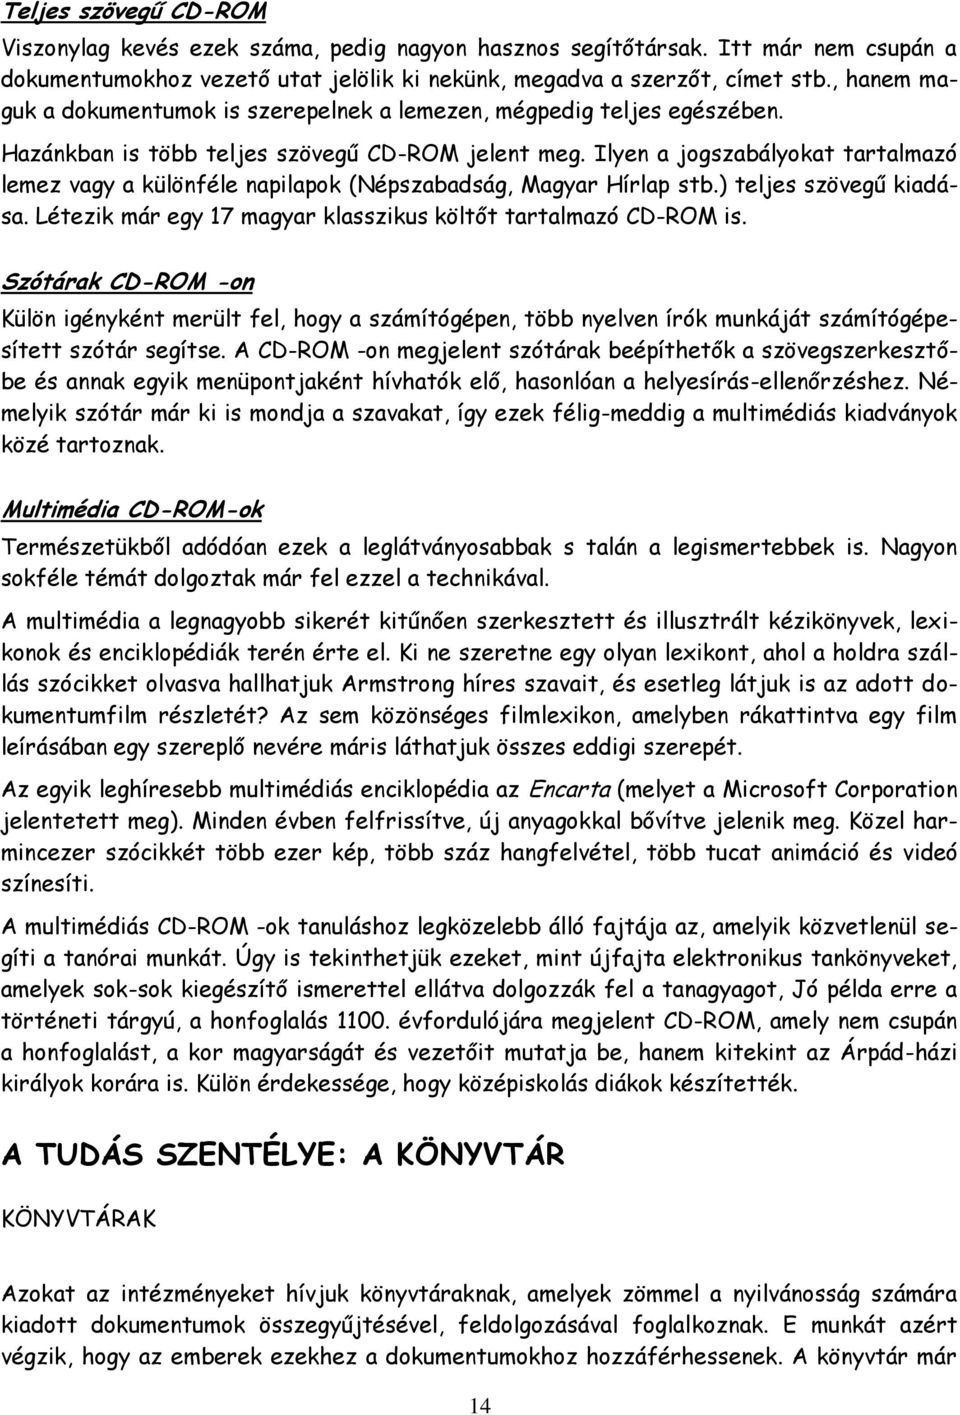 Ilyen a jogszabályokat tartalmazó lemez vagy a különféle napilapok (Népszabadság, Magyar Hírlap stb.) teljes szövegű kiadása. Létezik már egy 17 magyar klasszikus költőt tartalmazó CD-ROM is.